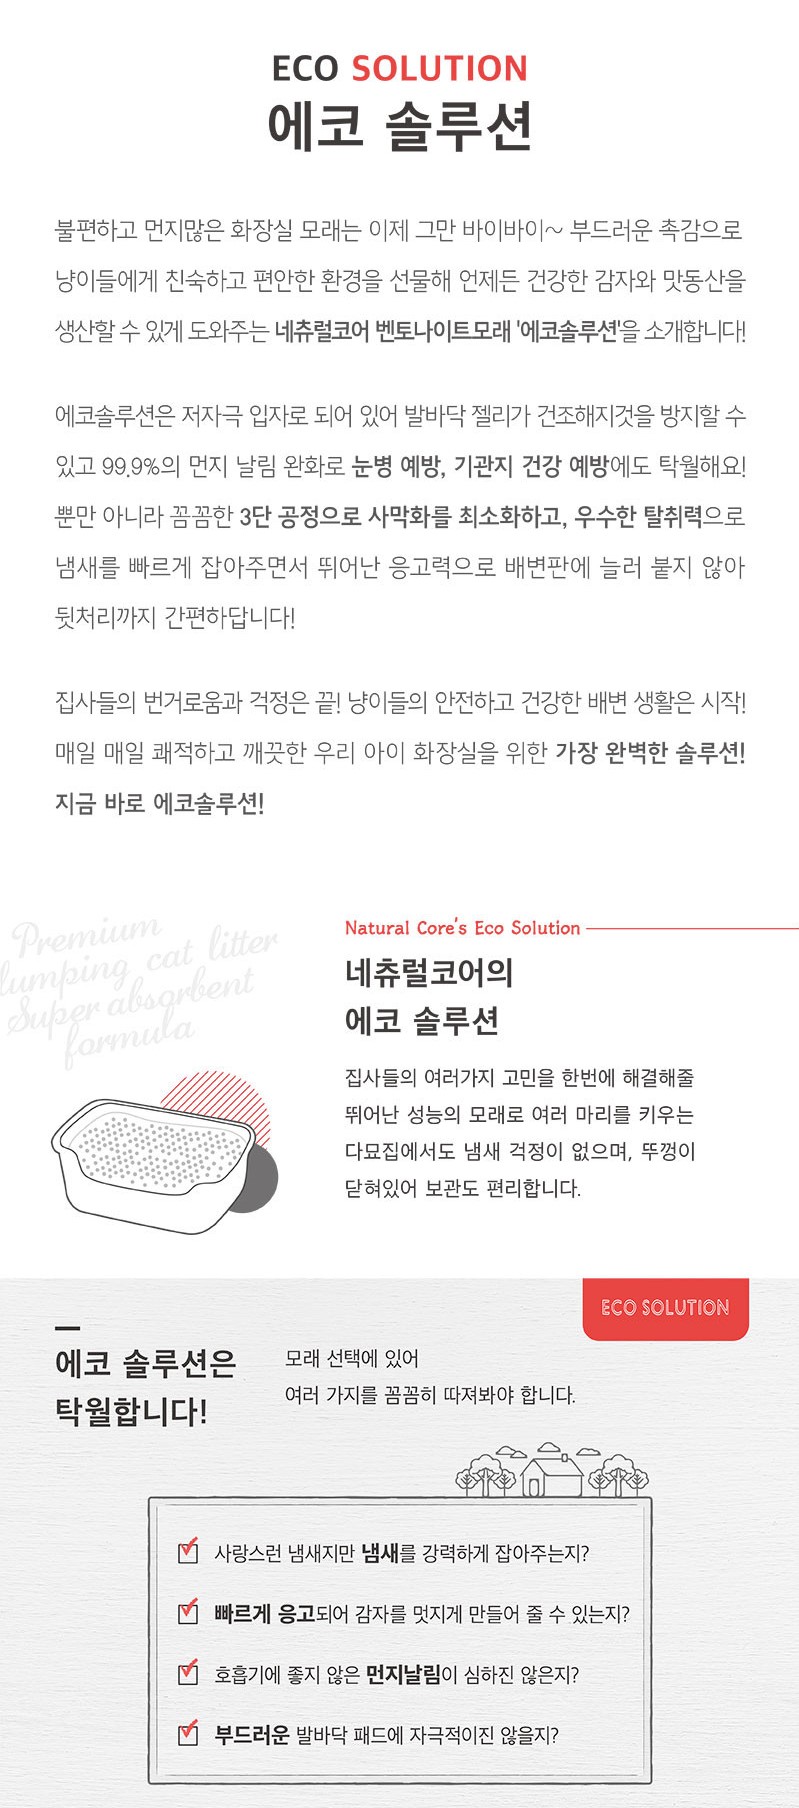 韓國食品-[네츄럴코어] 에코솔루션 (스페셜 그린) 4kg